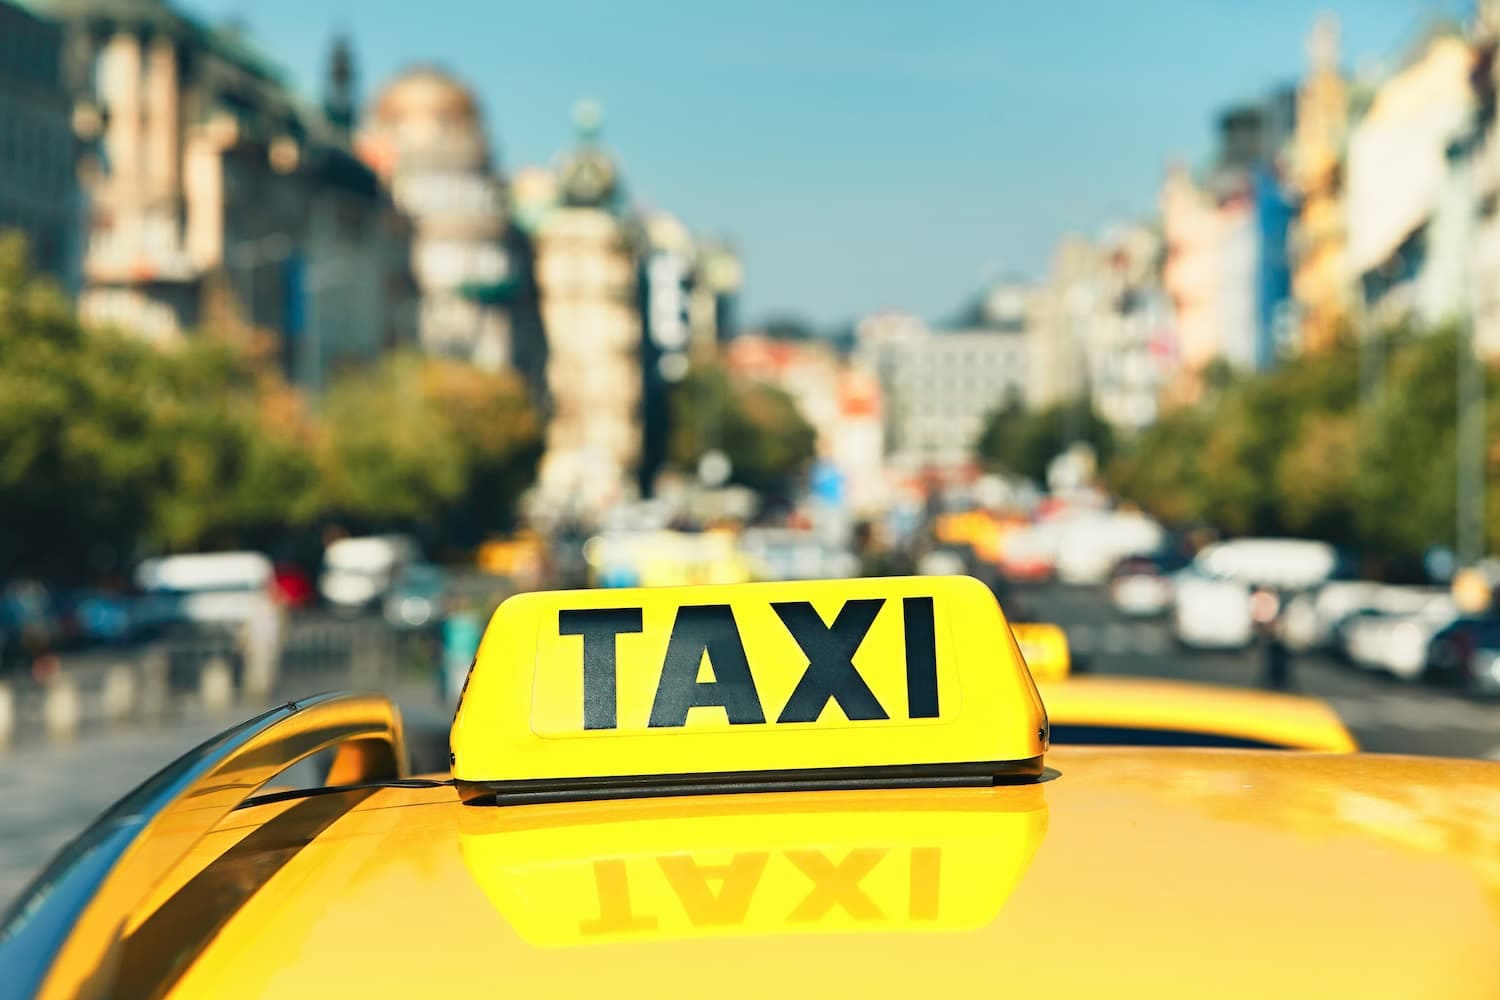 enseigne taxi sur le toit d'une voiture jaune